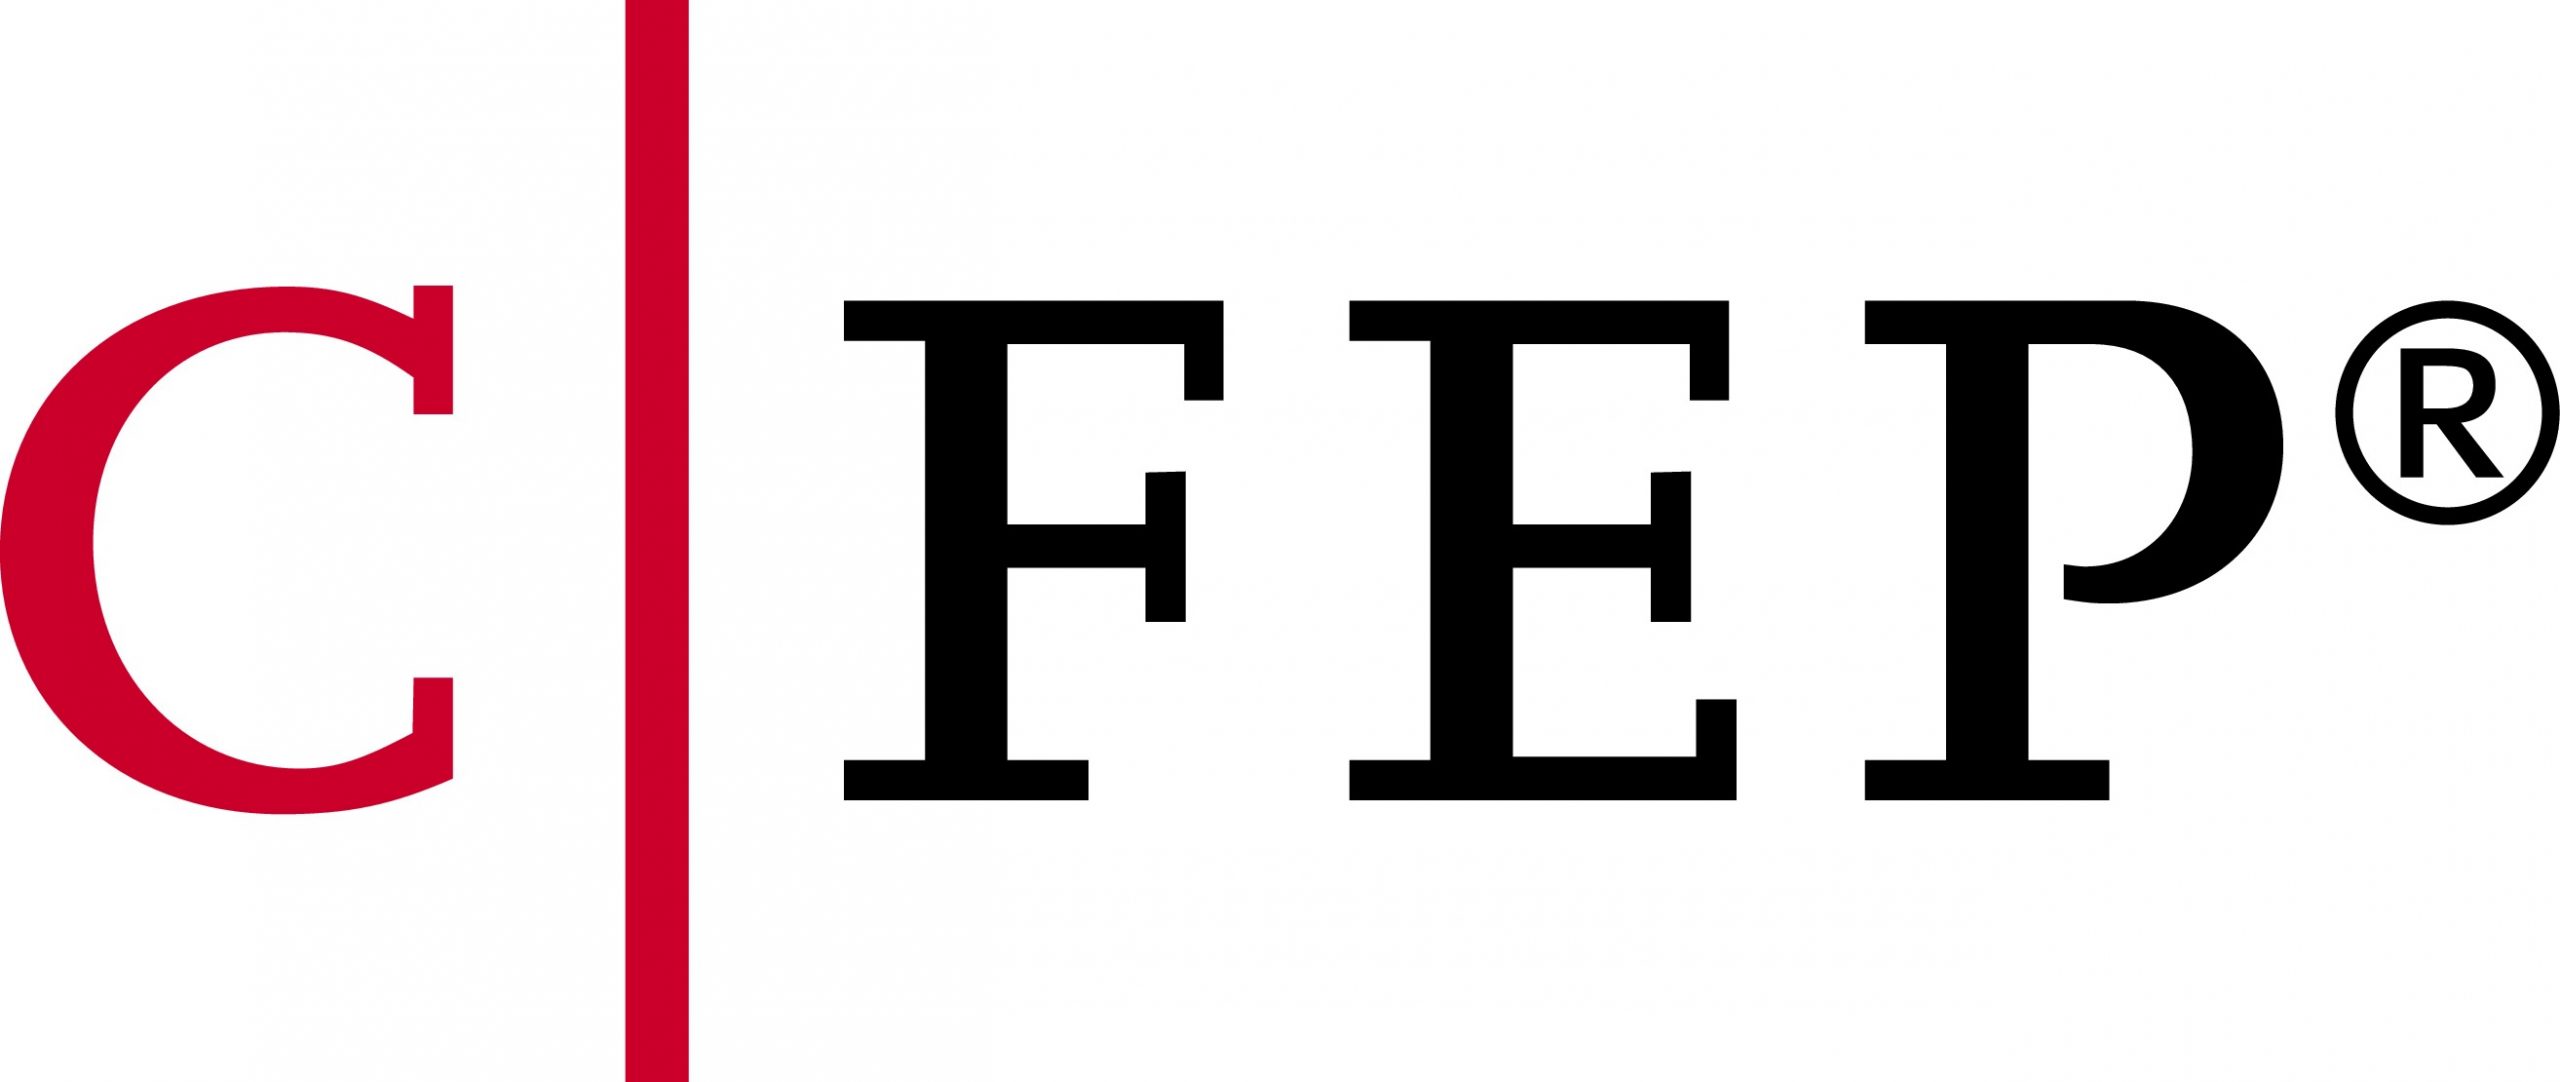 Das CFEP Logo steht für CERTIFIED FOUNDATION AND ESTATE PLANNER